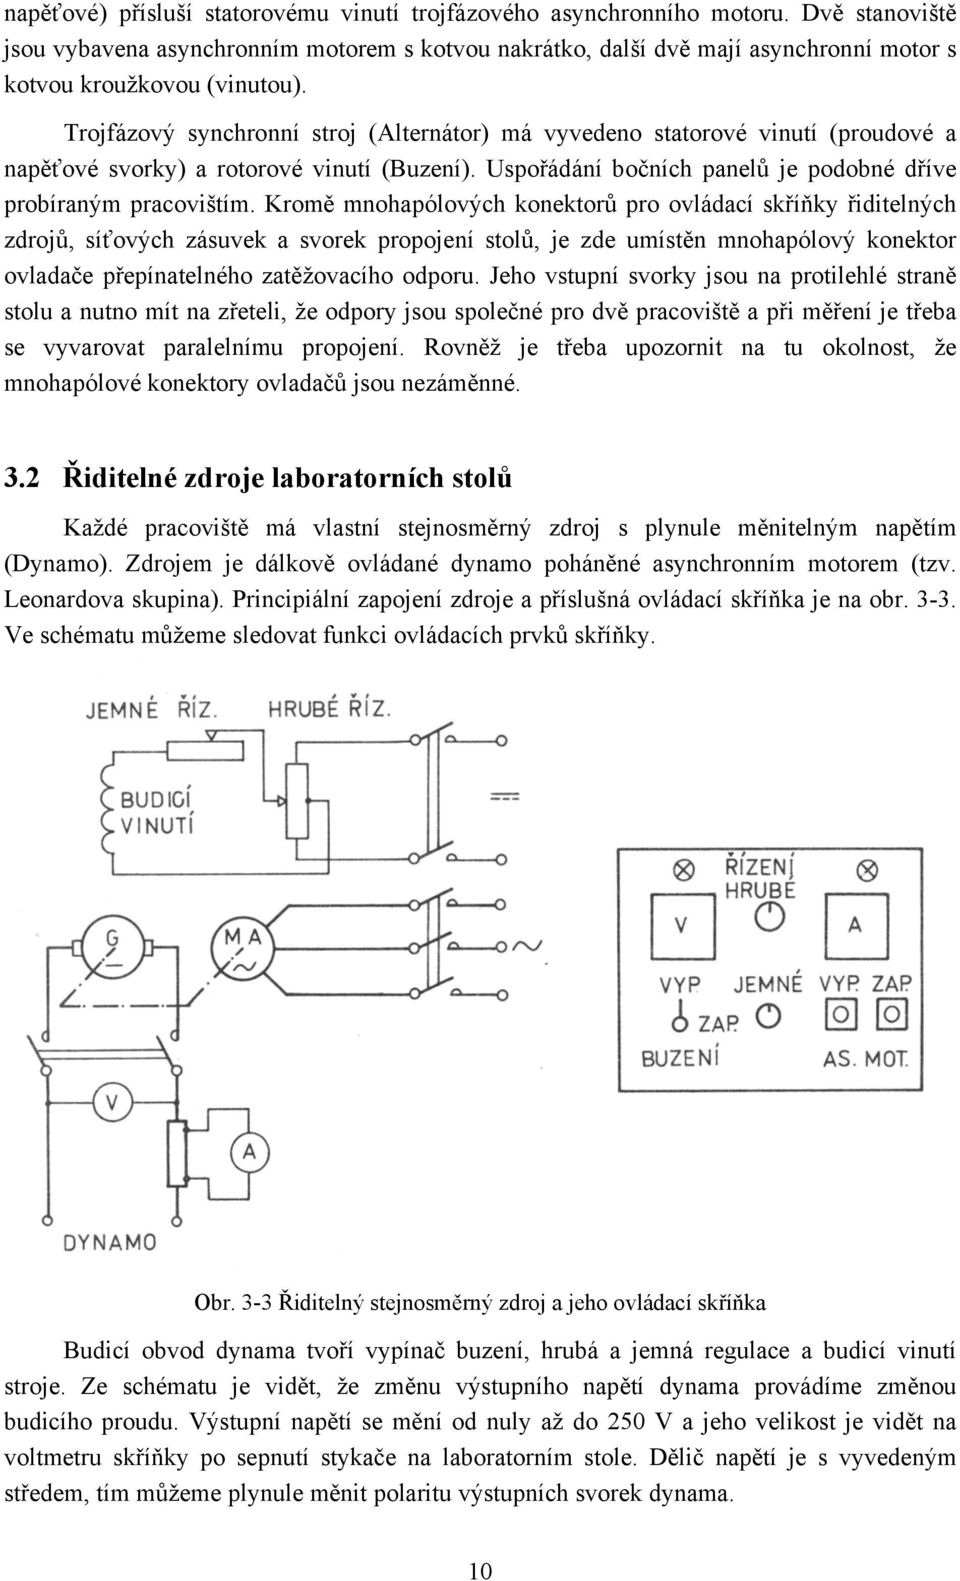 Trojfázový synchronní stroj (Alternátor) má vyvedeno statorové vinutí (proudové a napěťové svorky) a rotorové vinutí (Buzení). Uspořádání bočních panelů je podobné dříve probíraným pracovištím.